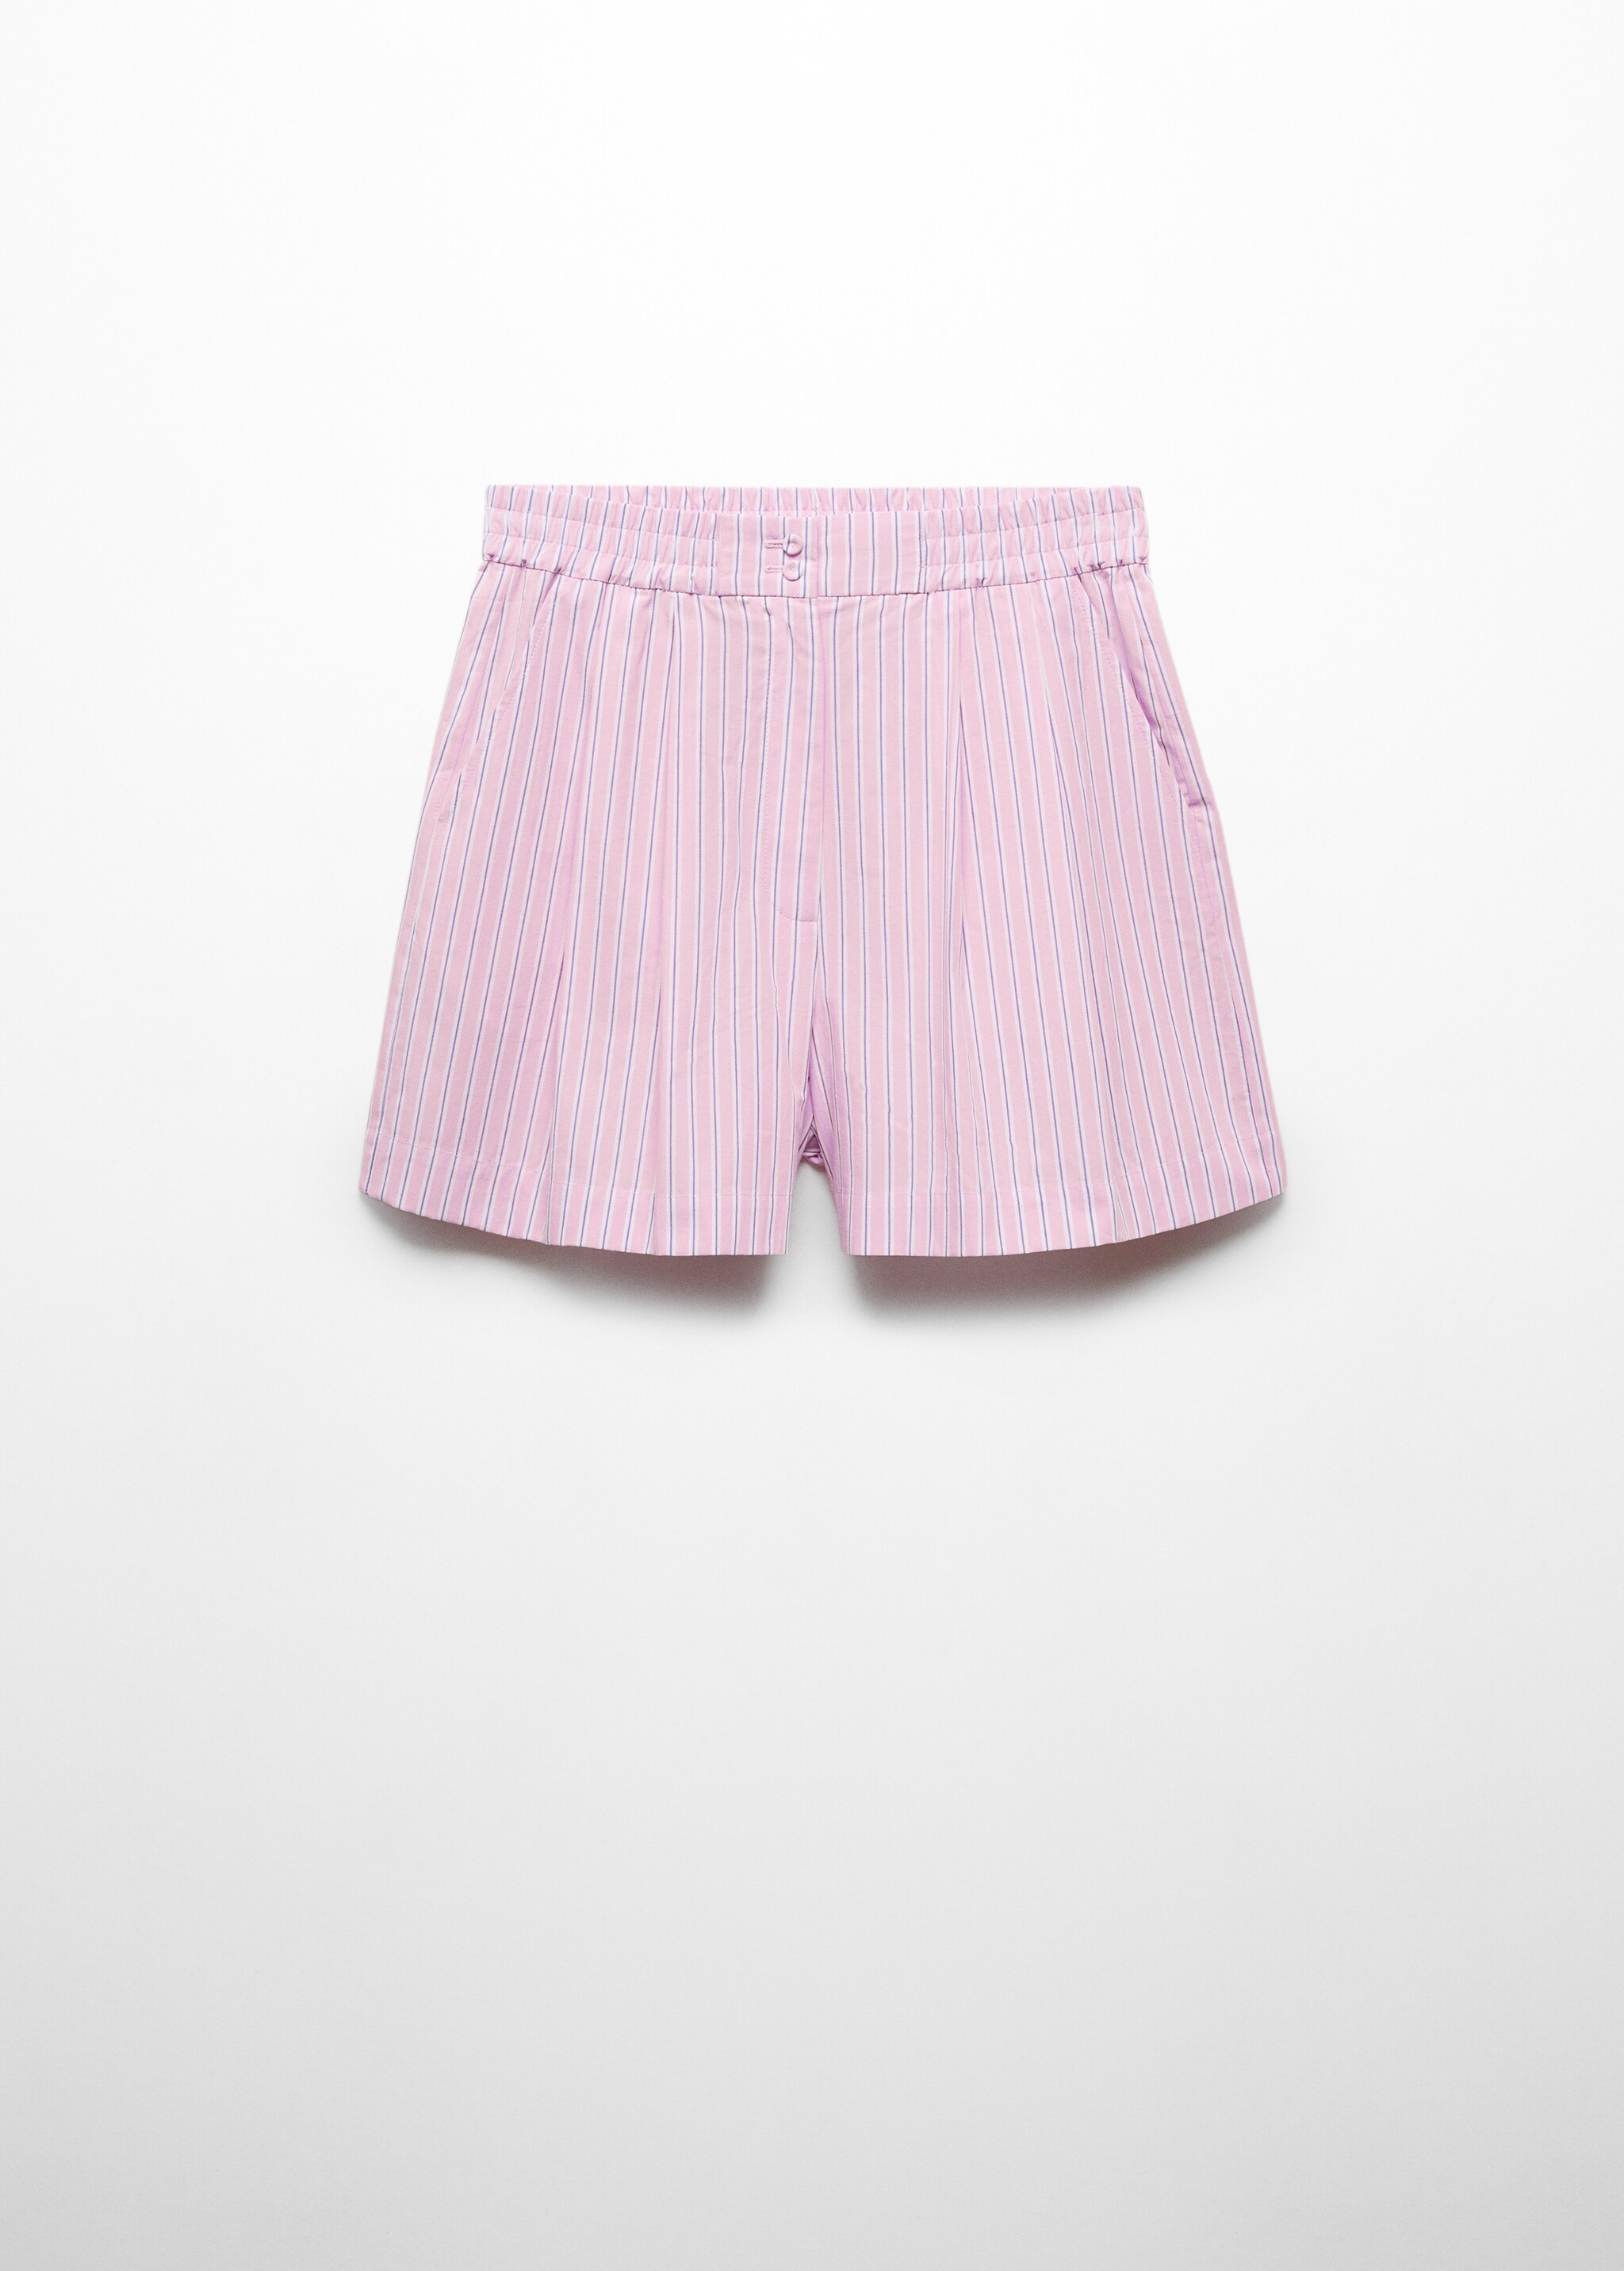 Shorts rayas algodón - Artículo sin modelo